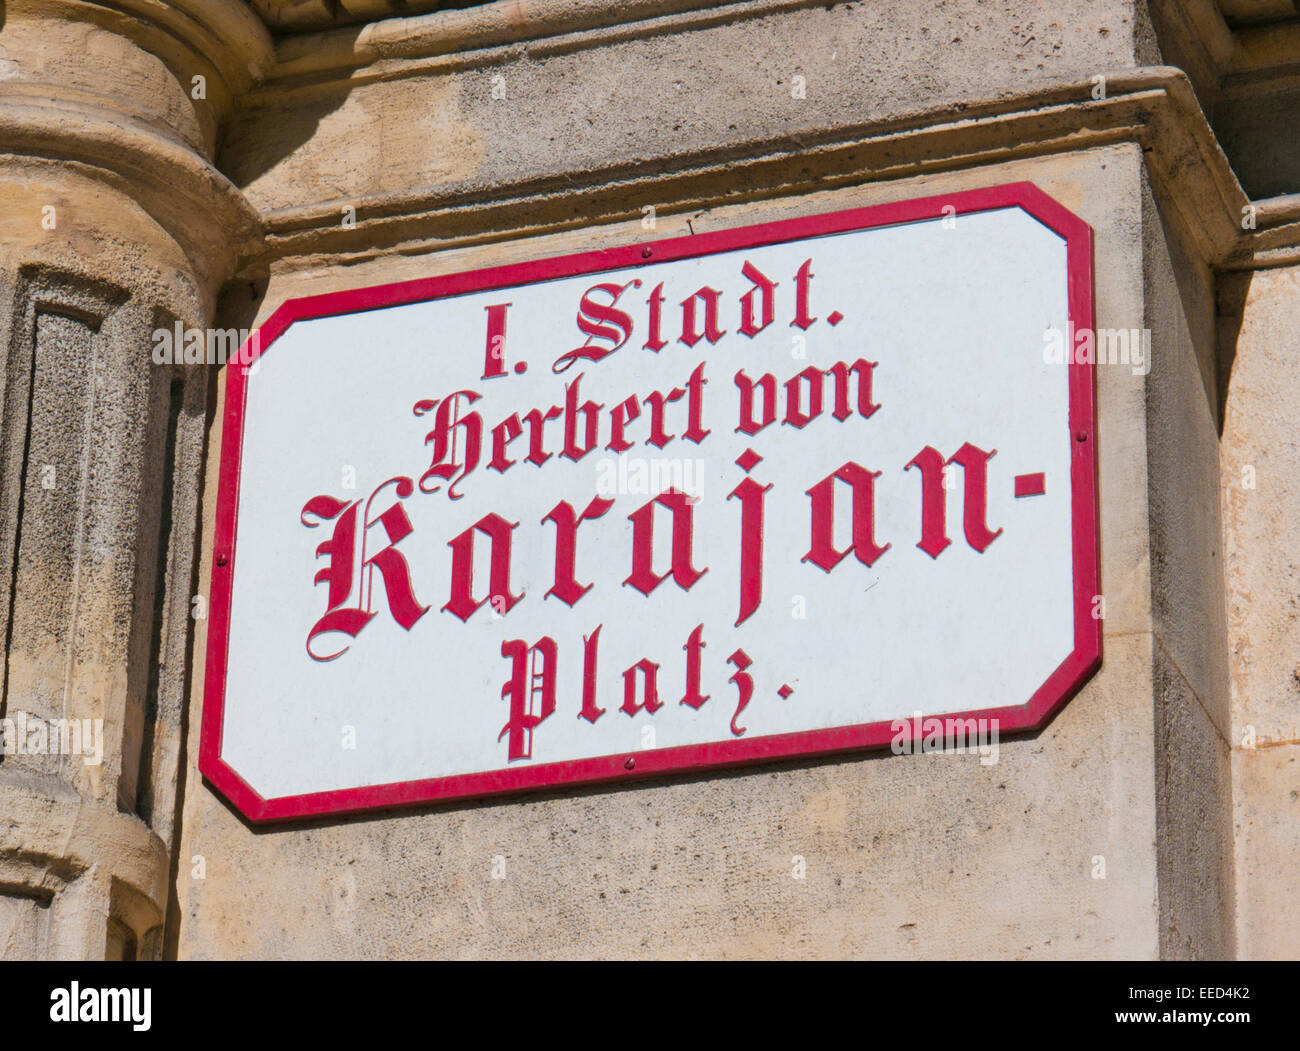 Herbert Von Karajan Platz home of The Vienna State Opera House in Austria Stock Photo